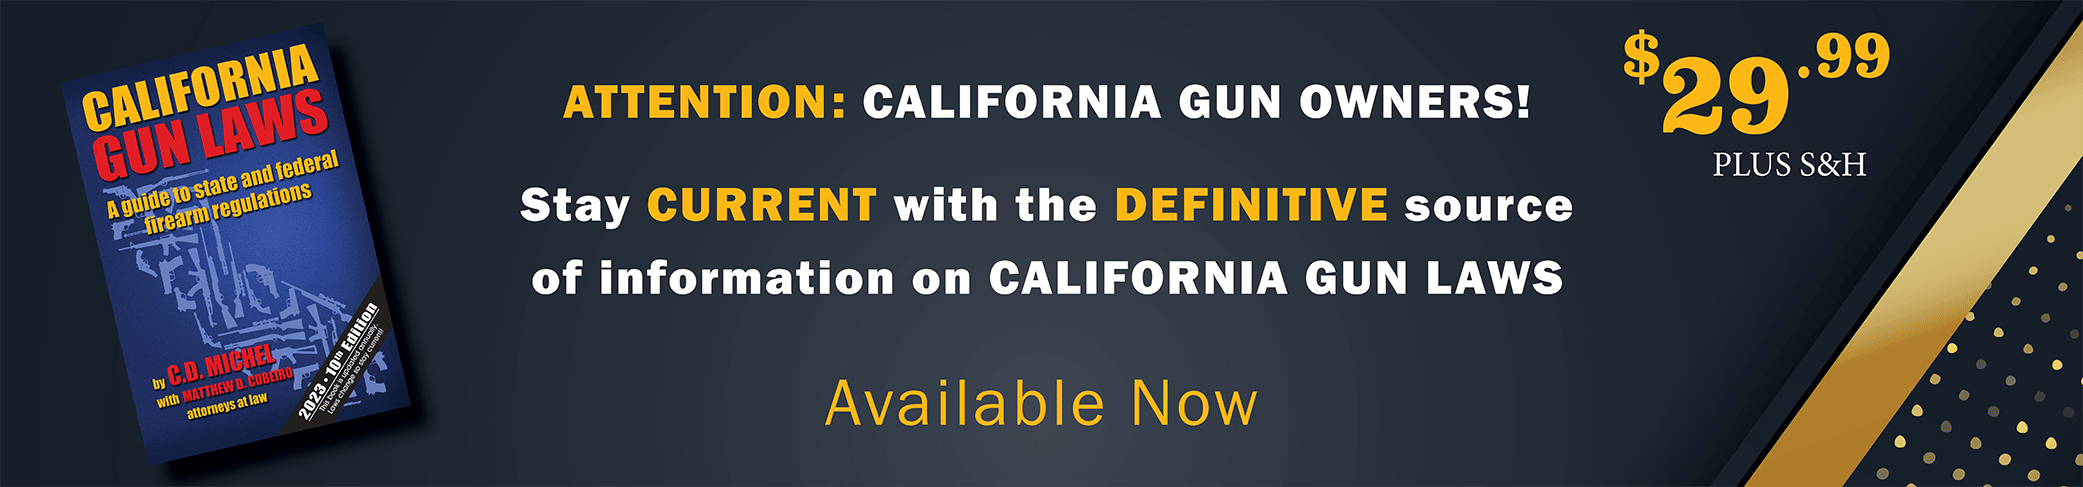 California Gun Laws Book Available now